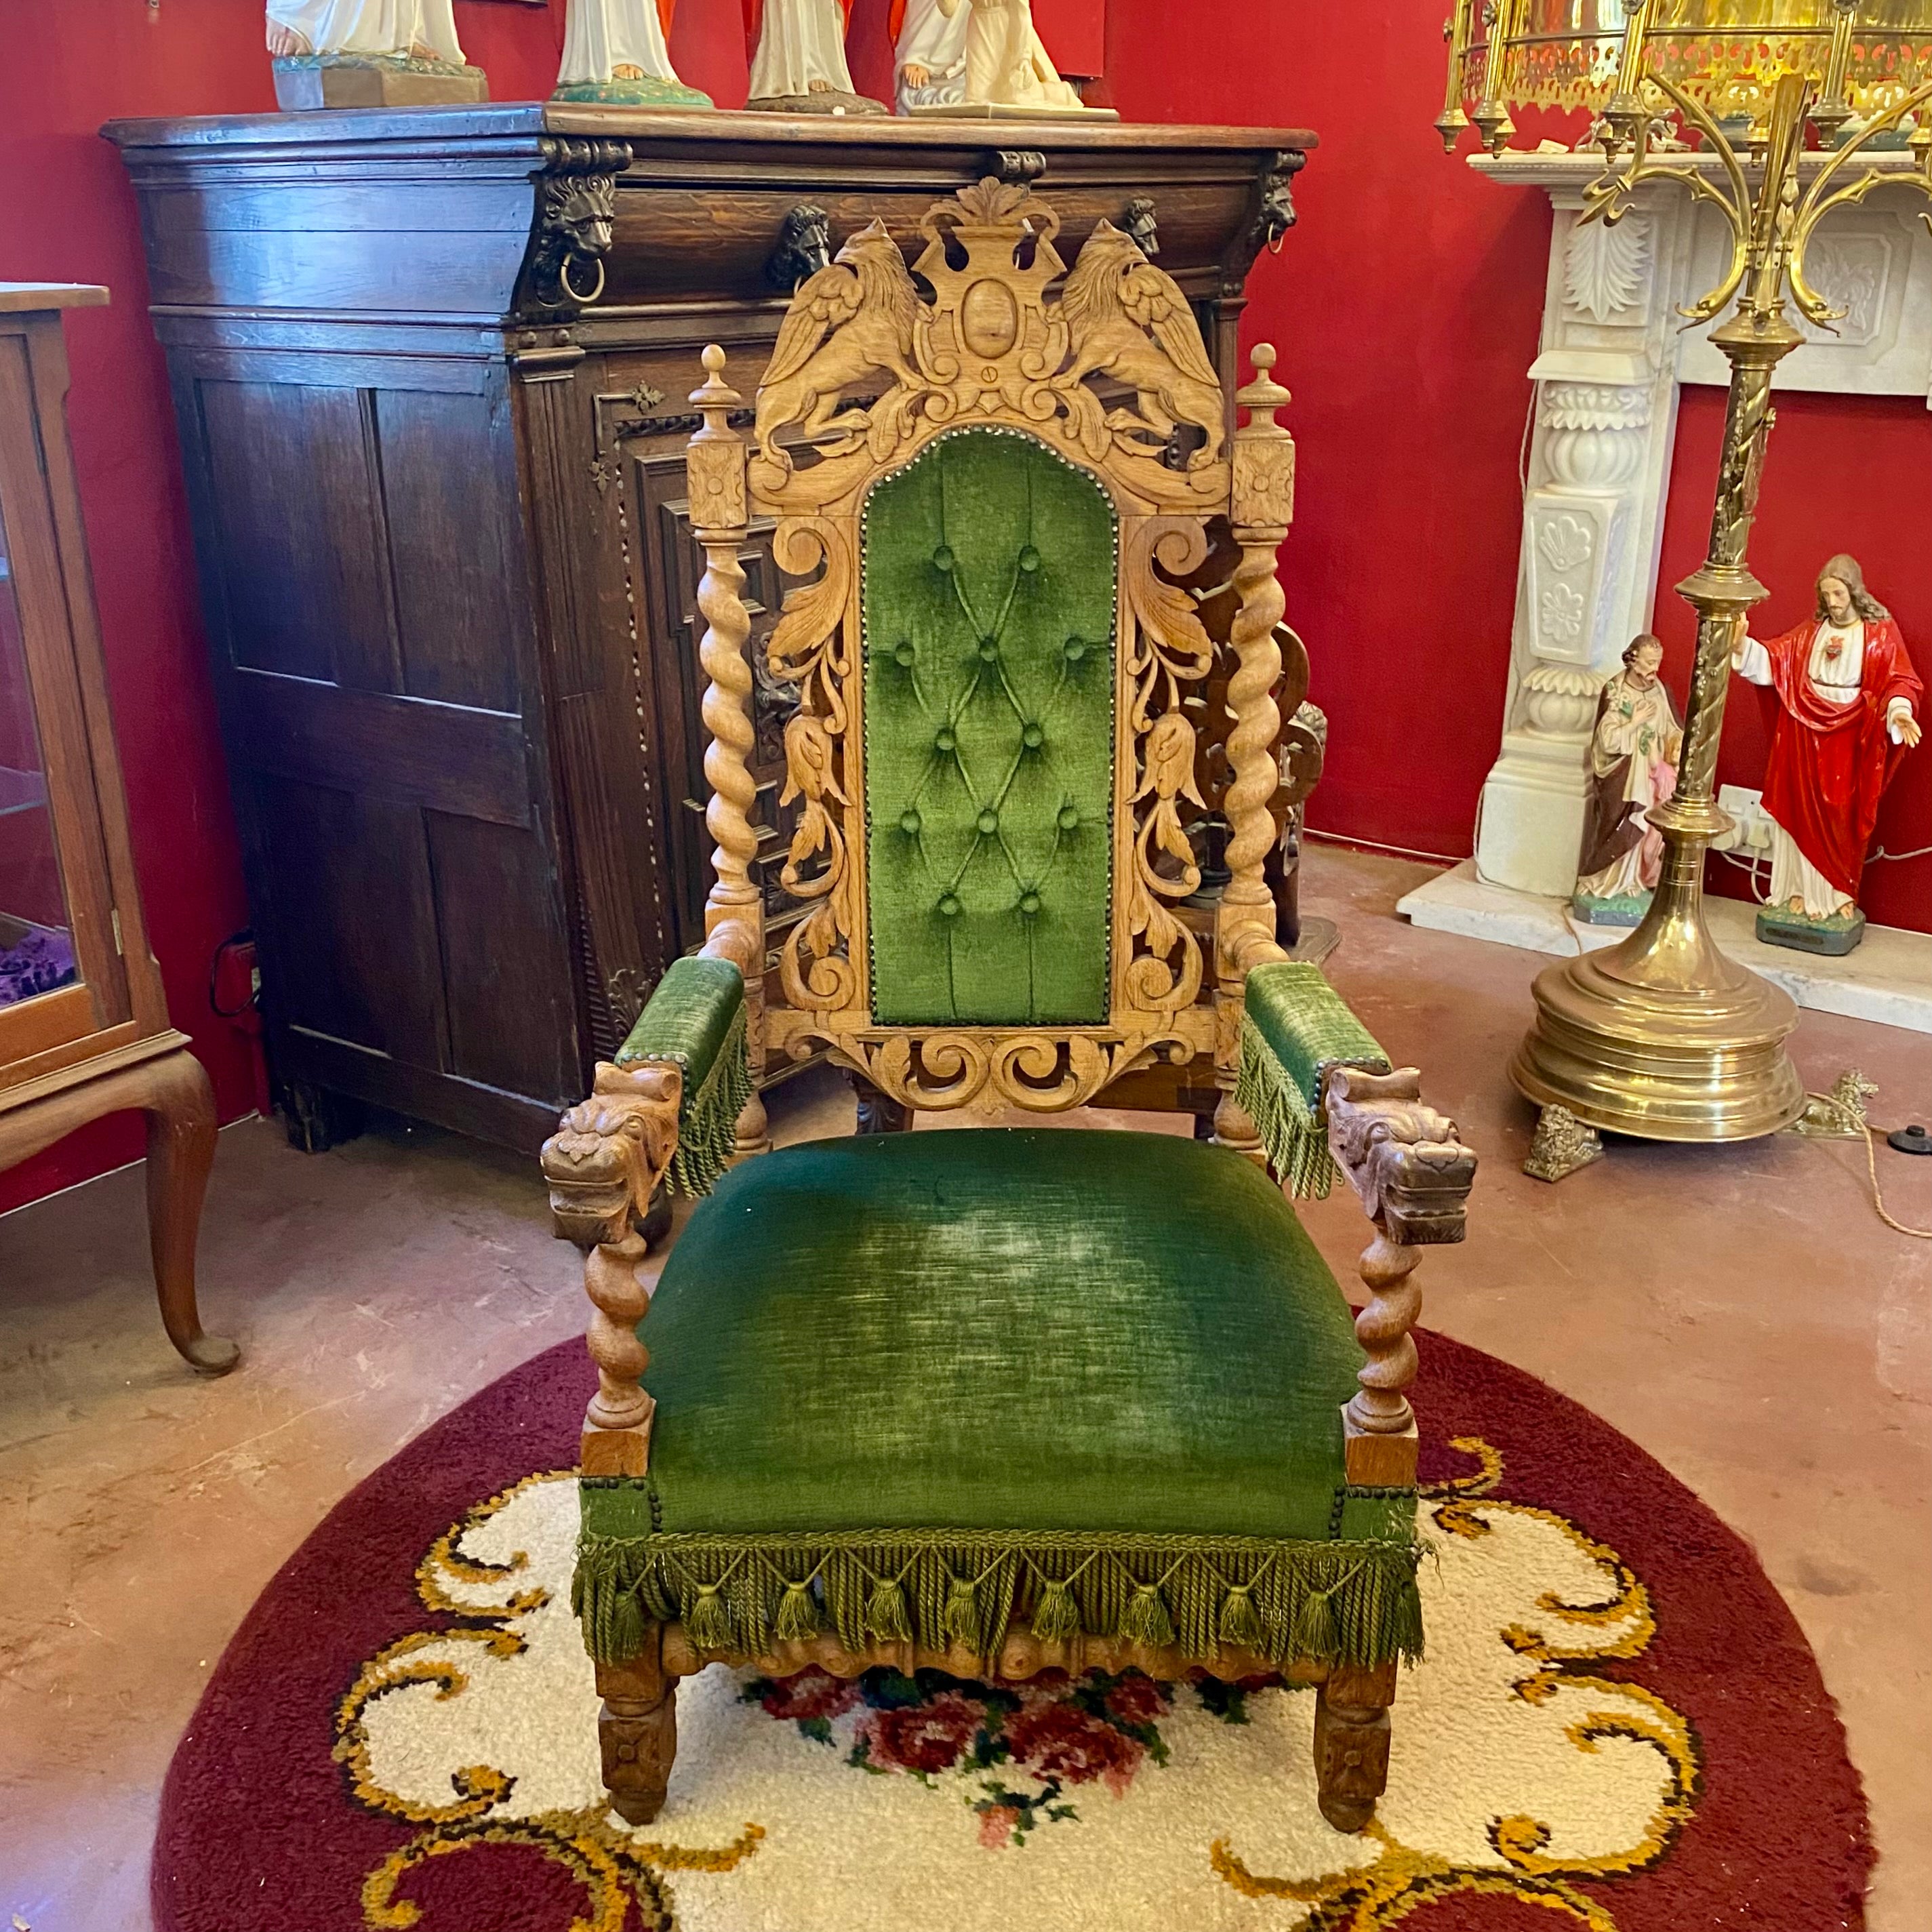 19th Century Oak Barley Twist Throne Chair